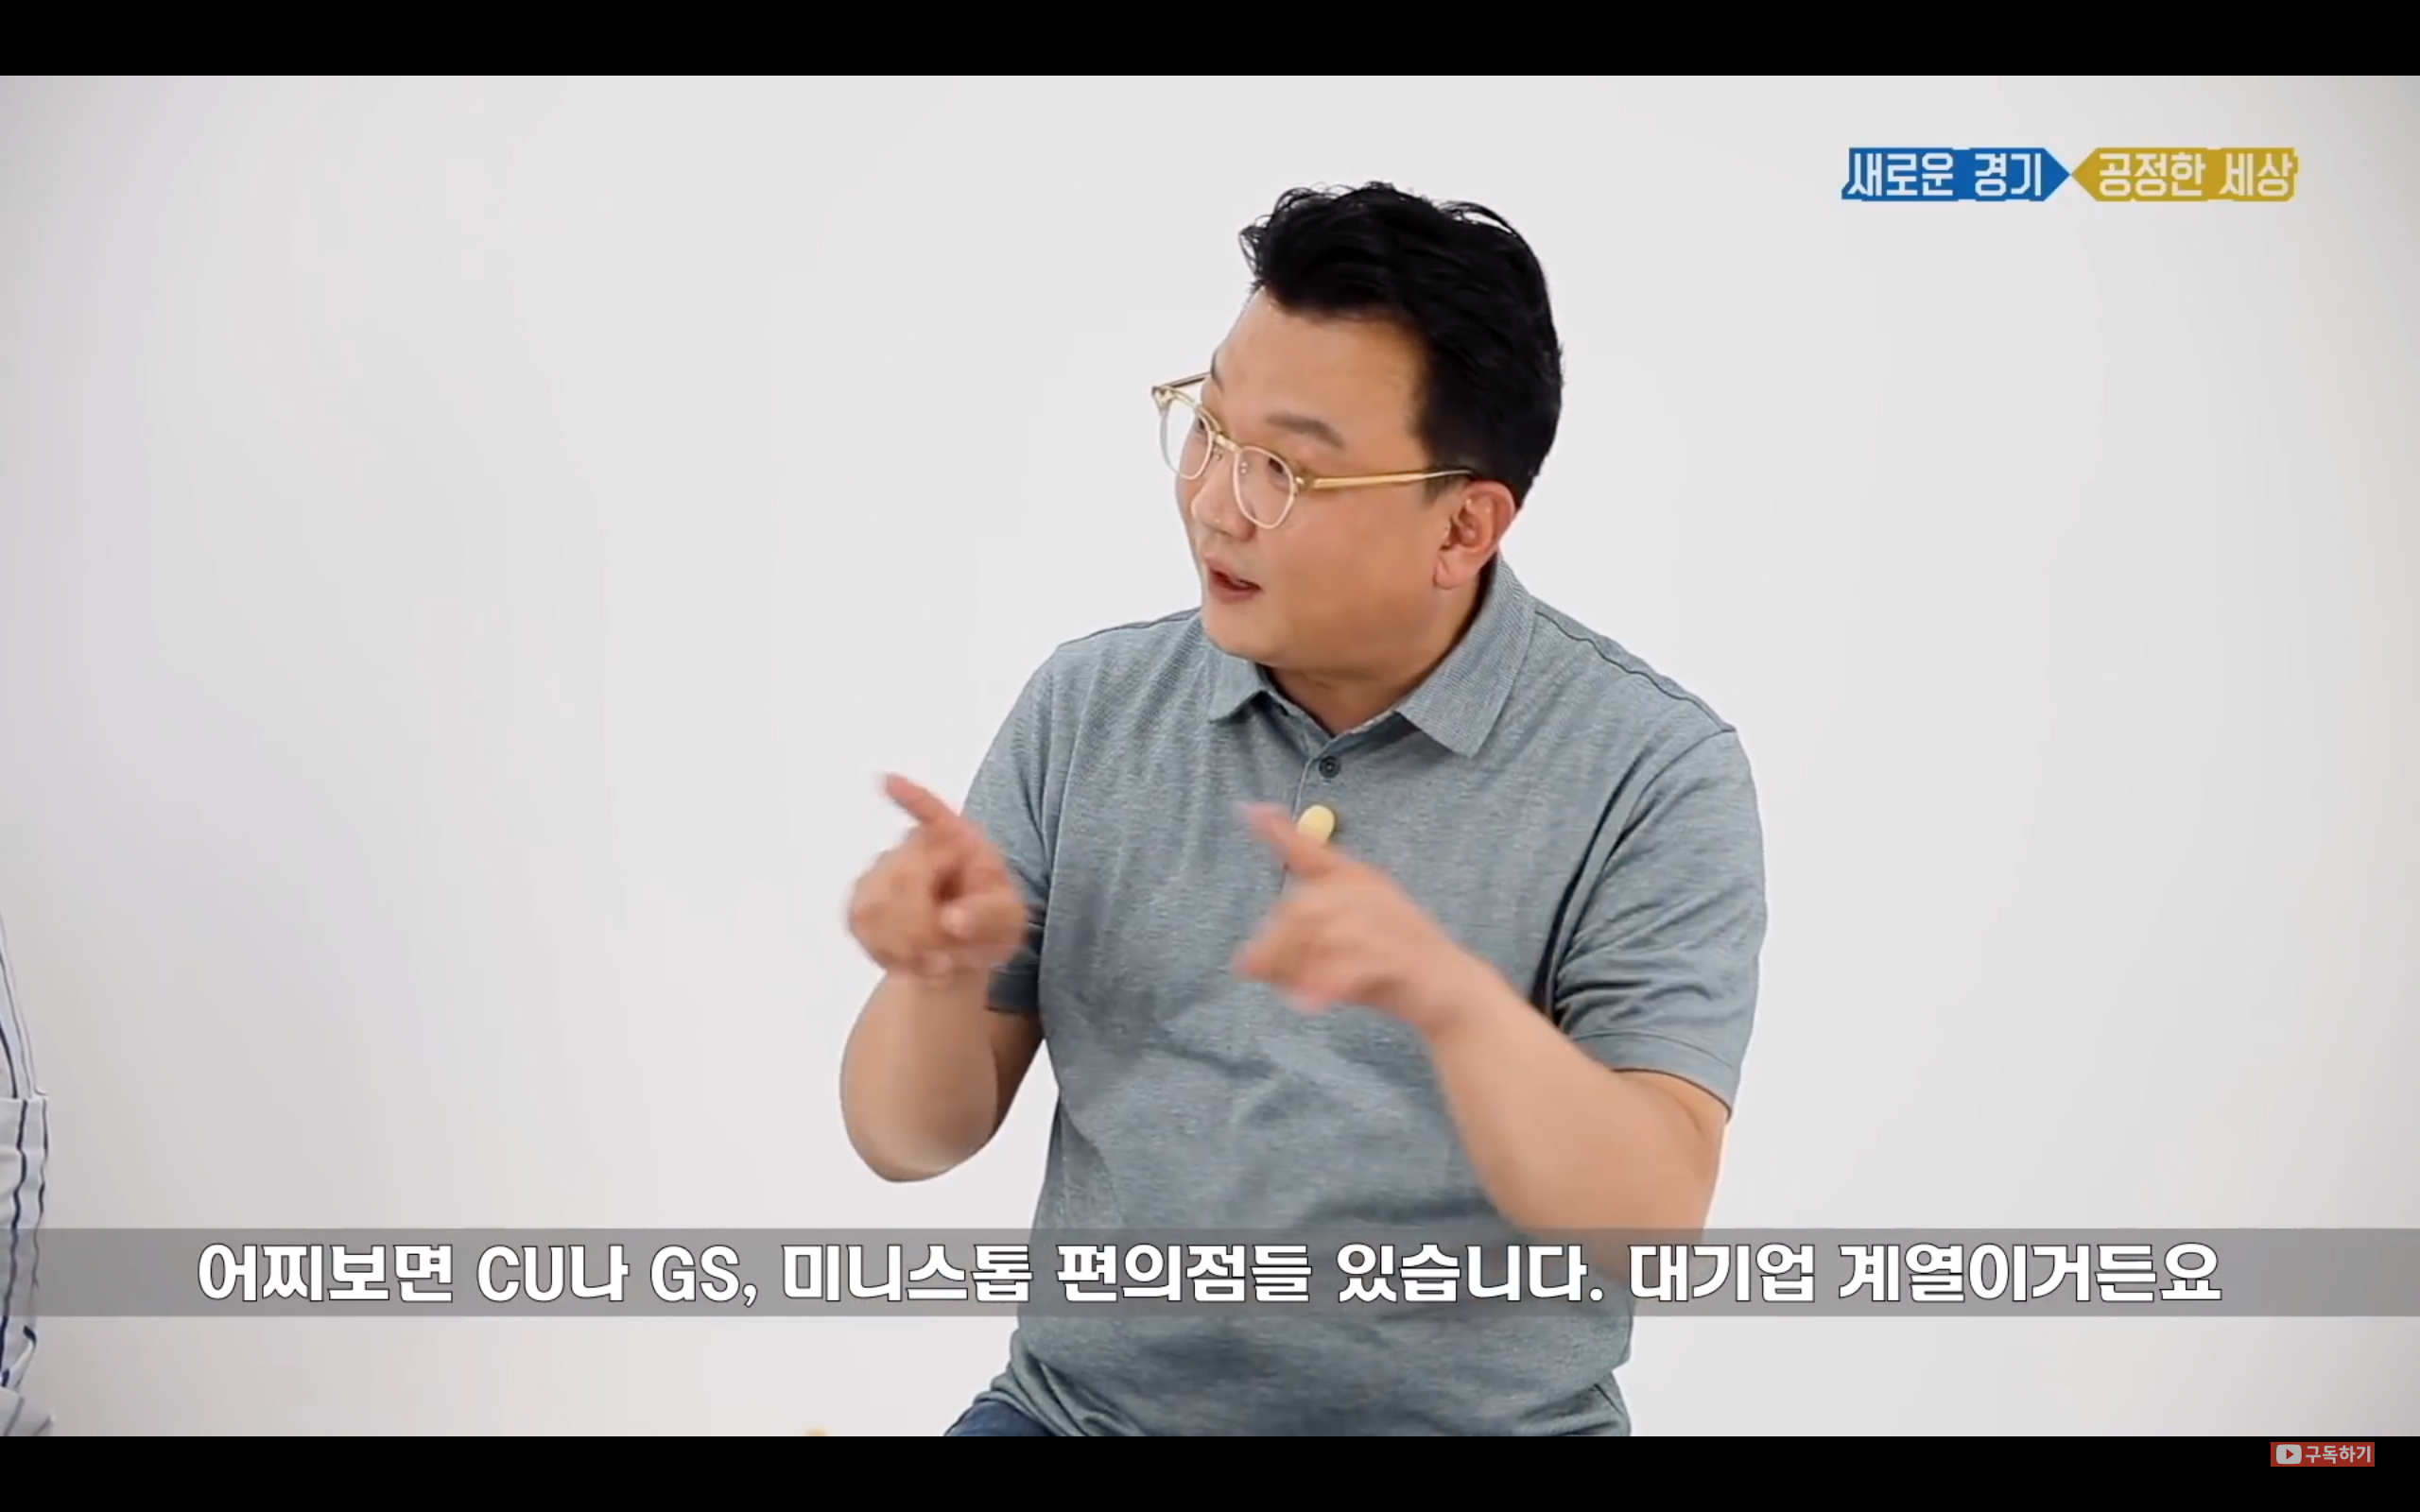 경기도 기본소득 정책을 주제에 대해 설명하는 전 경기도시장상권진흥원장